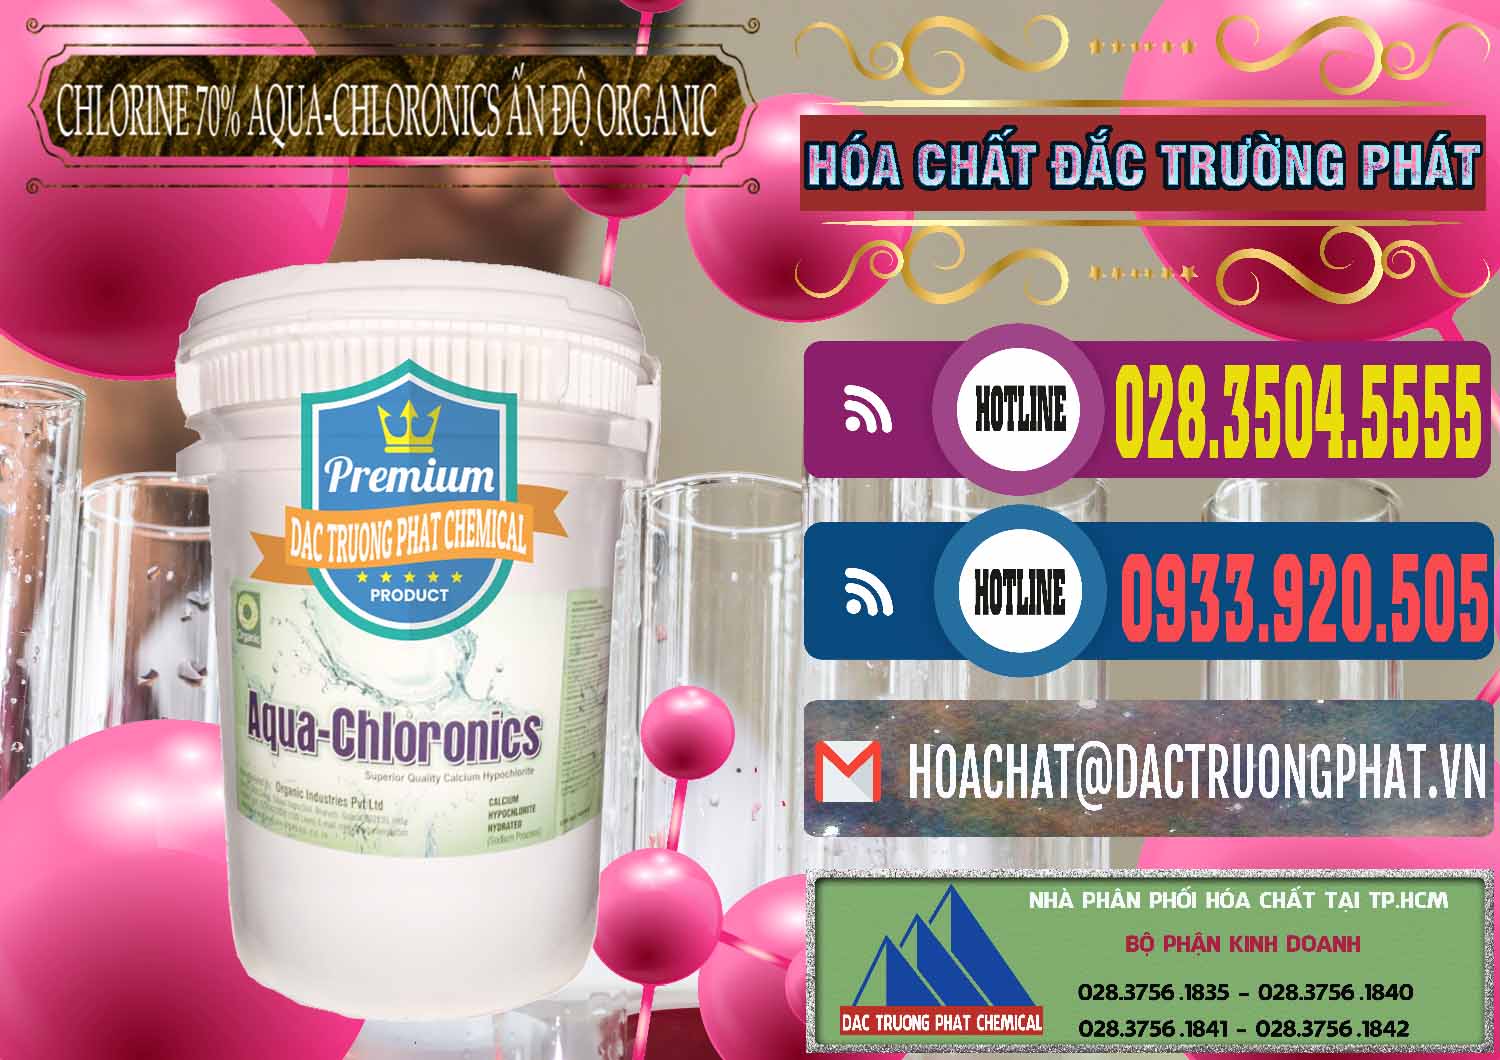 Đơn vị phân phối và bán Chlorine – Clorin 70% Aqua-Chloronics Ấn Độ Organic India - 0211 - Nhà phân phối và cung cấp hóa chất tại TP.HCM - muabanhoachat.com.vn